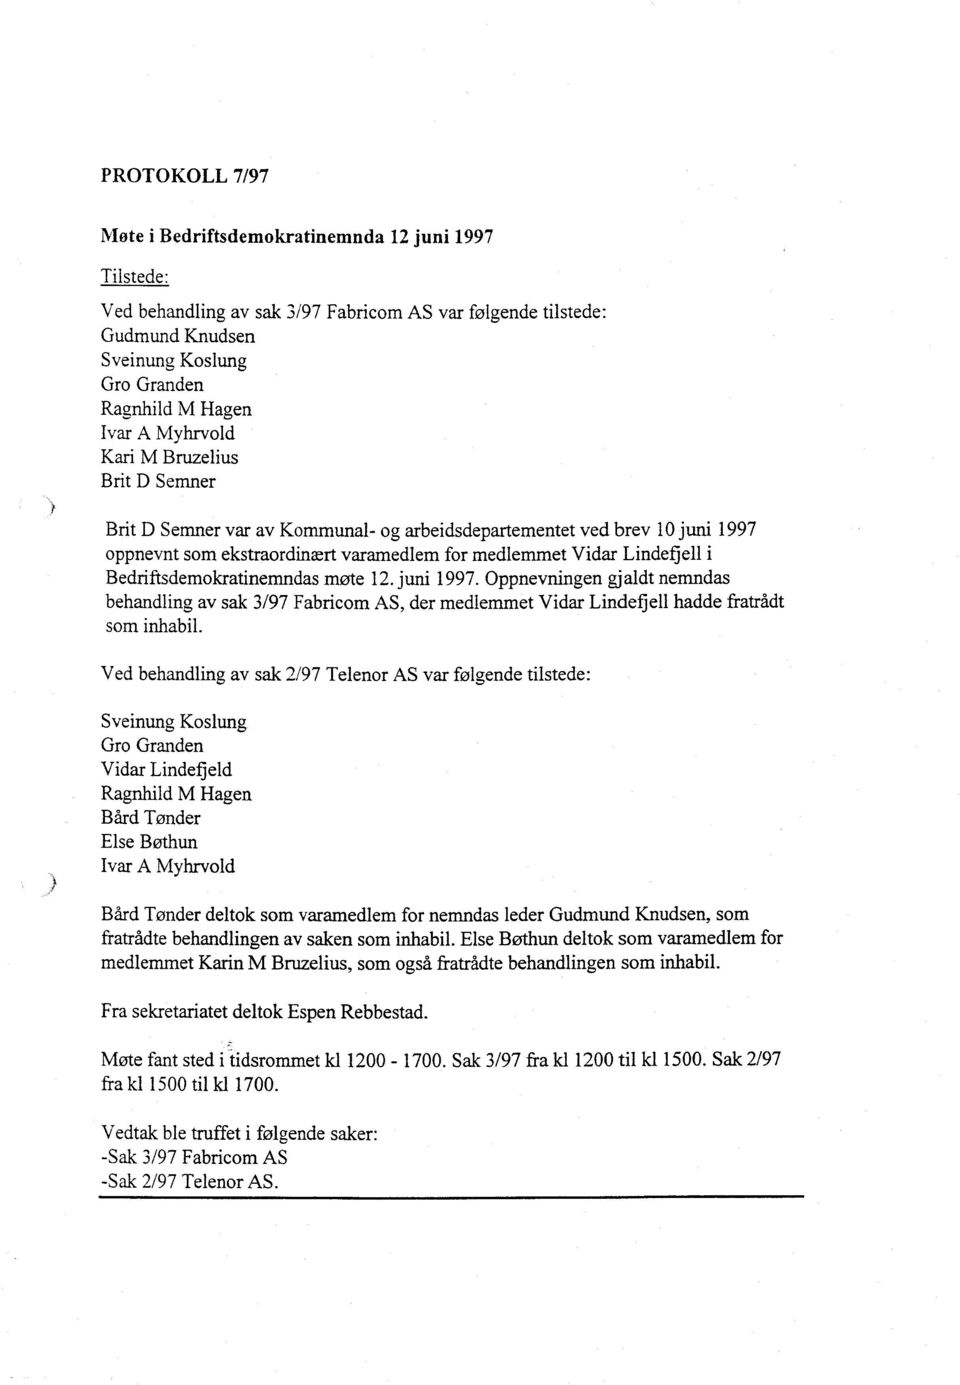 Bedriftsdemokratinemndas møte 12. juni 1997. Oppnevningen gjaldt nemndas behandling av sak 3/97 Fabricom AS, der medlemmet Vidar Lindefjell hadde fratrådt som inhabil.